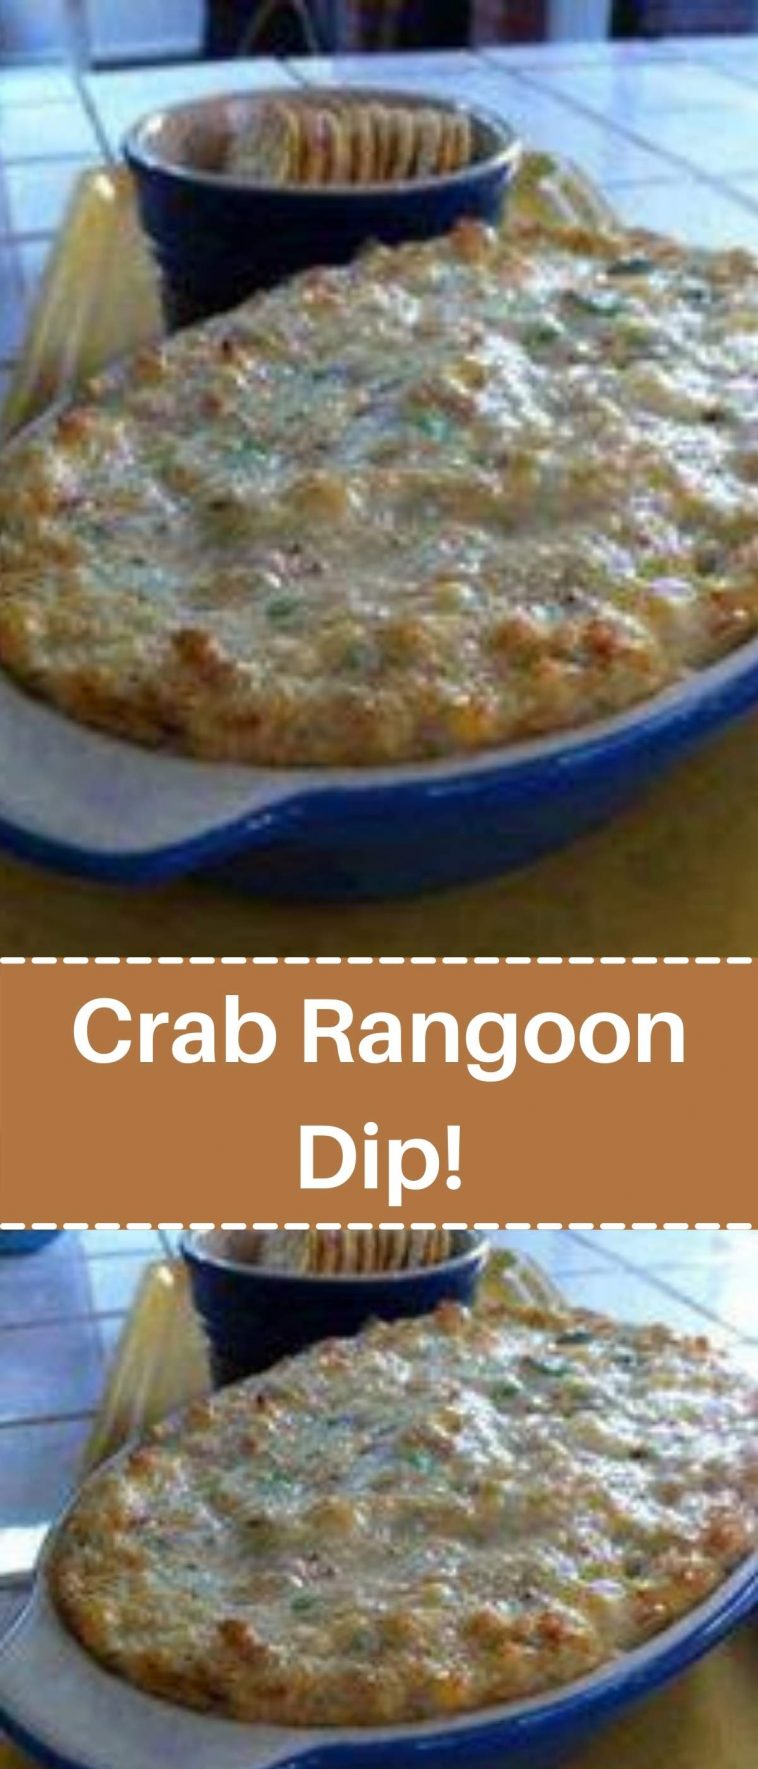 Crab Rangoon Dip!